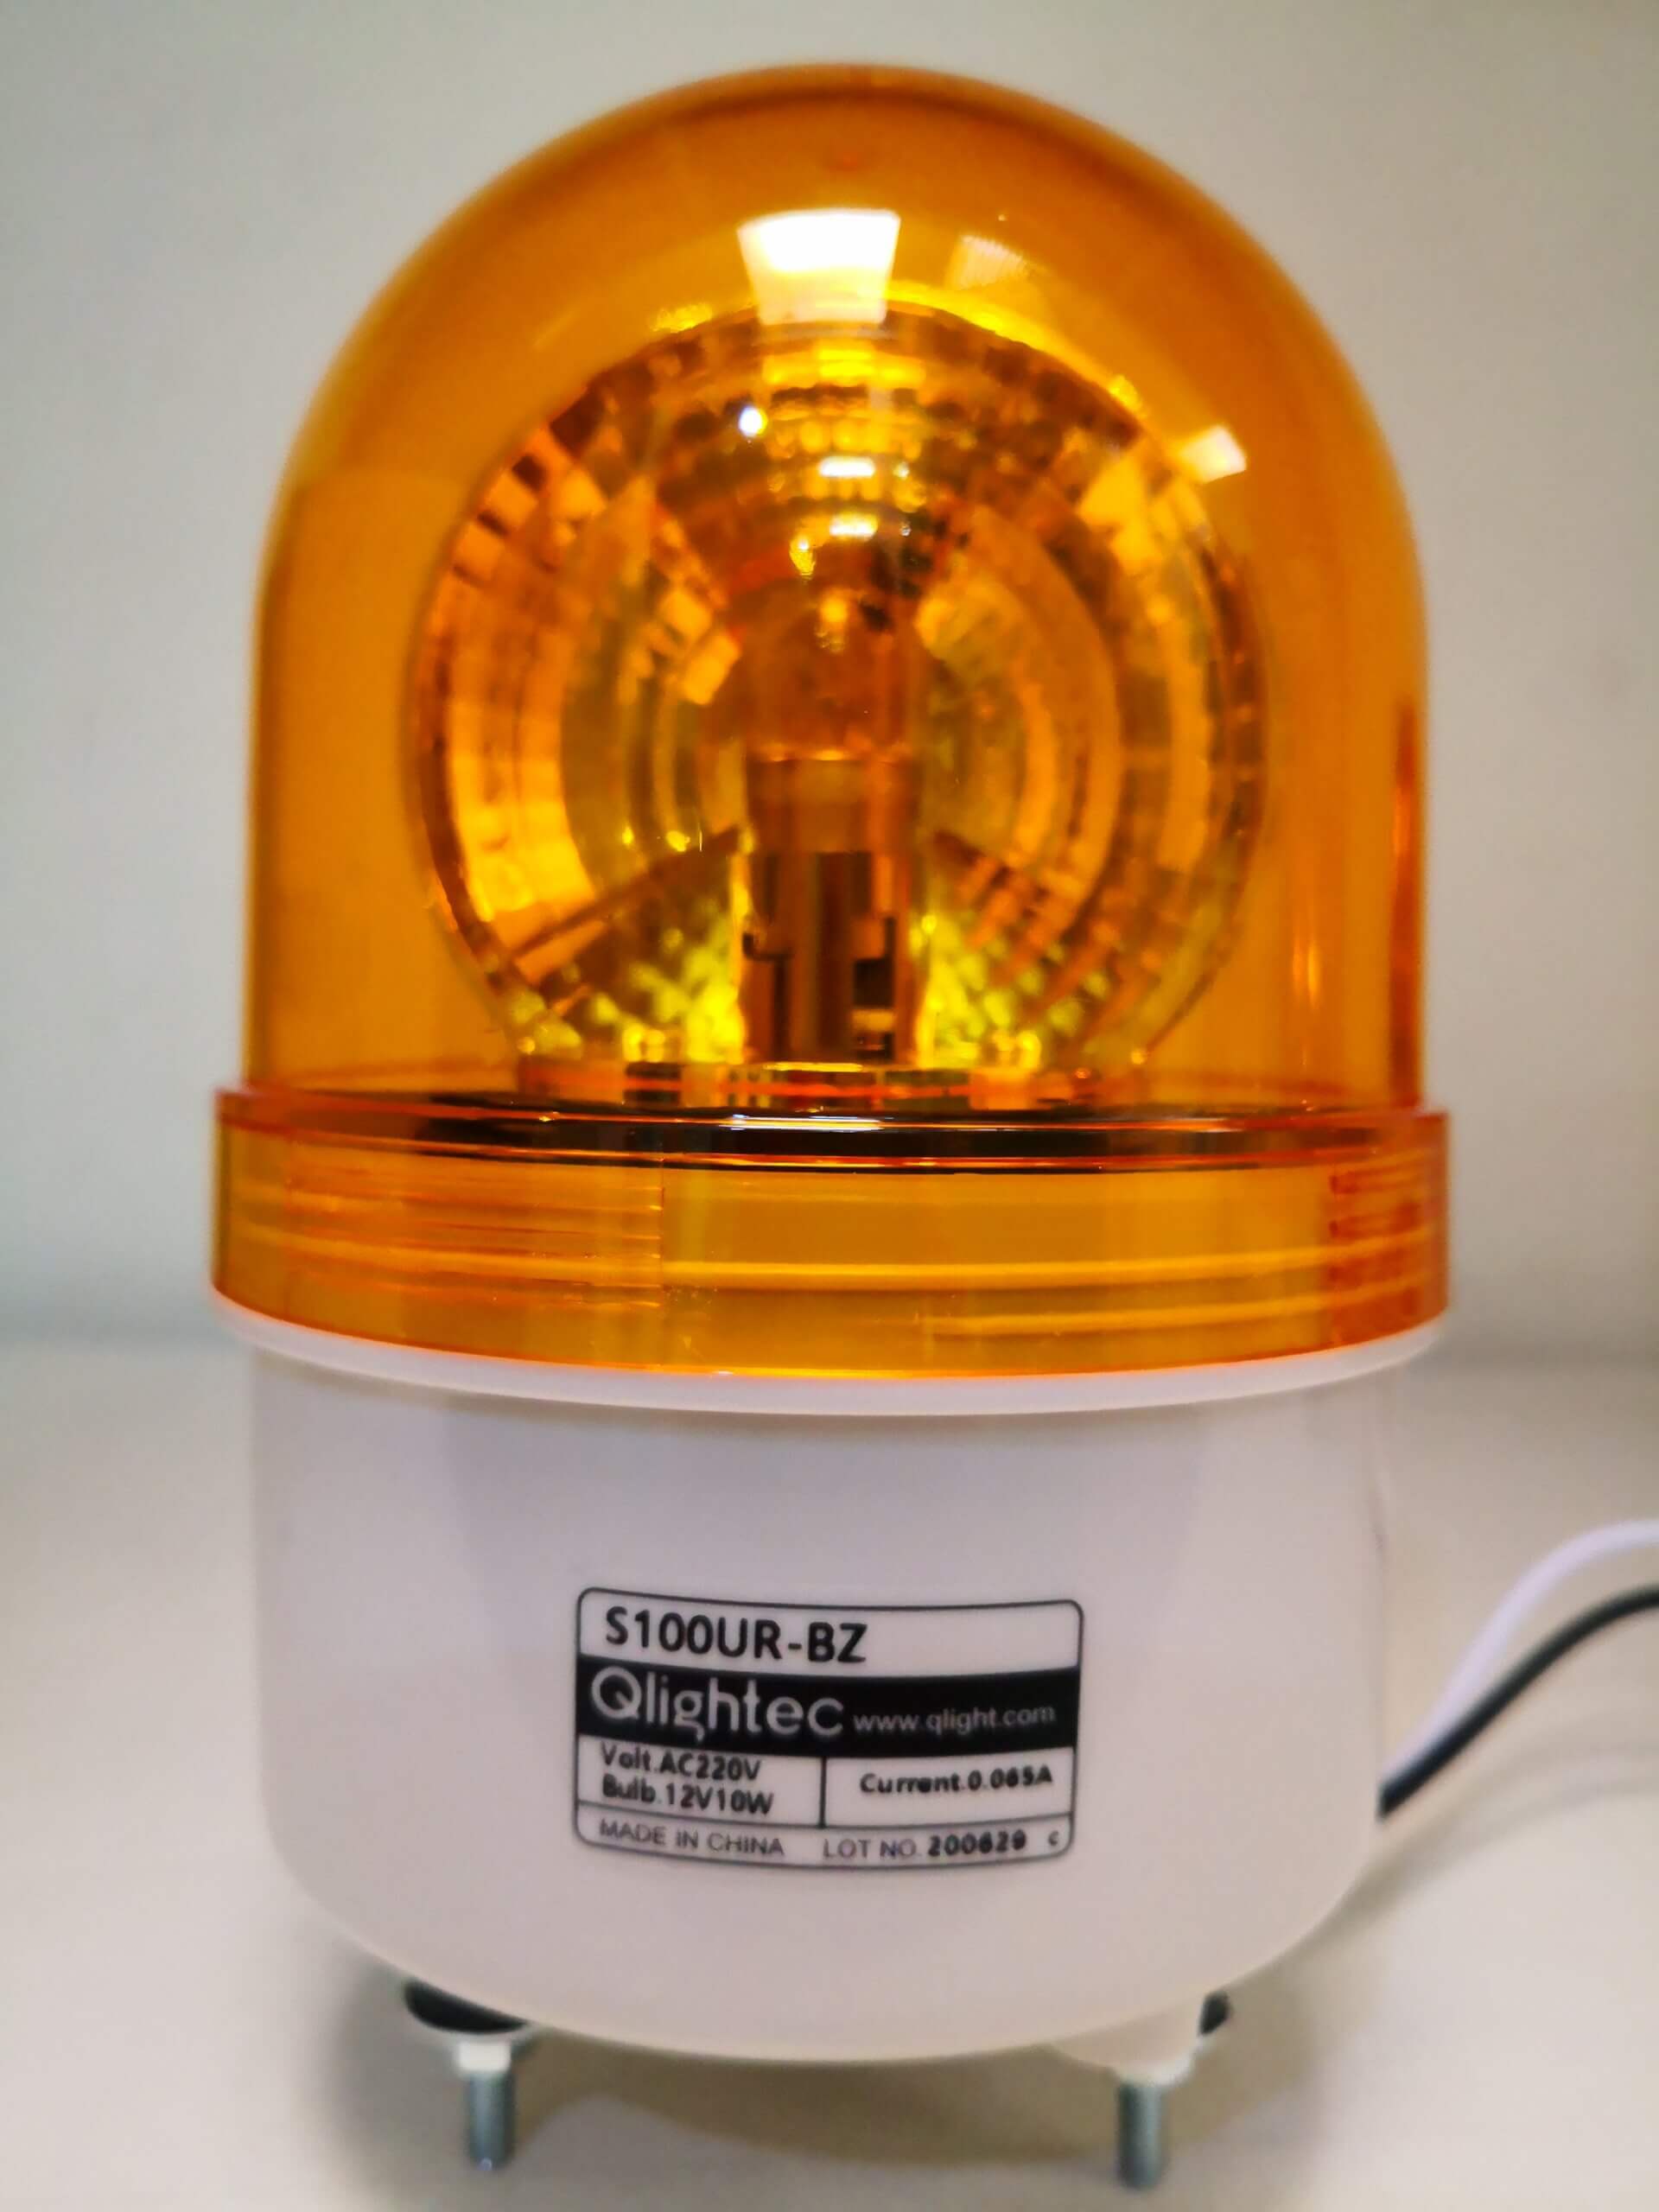 Qlight : S100UR Light (Blub & LED) - Dome type